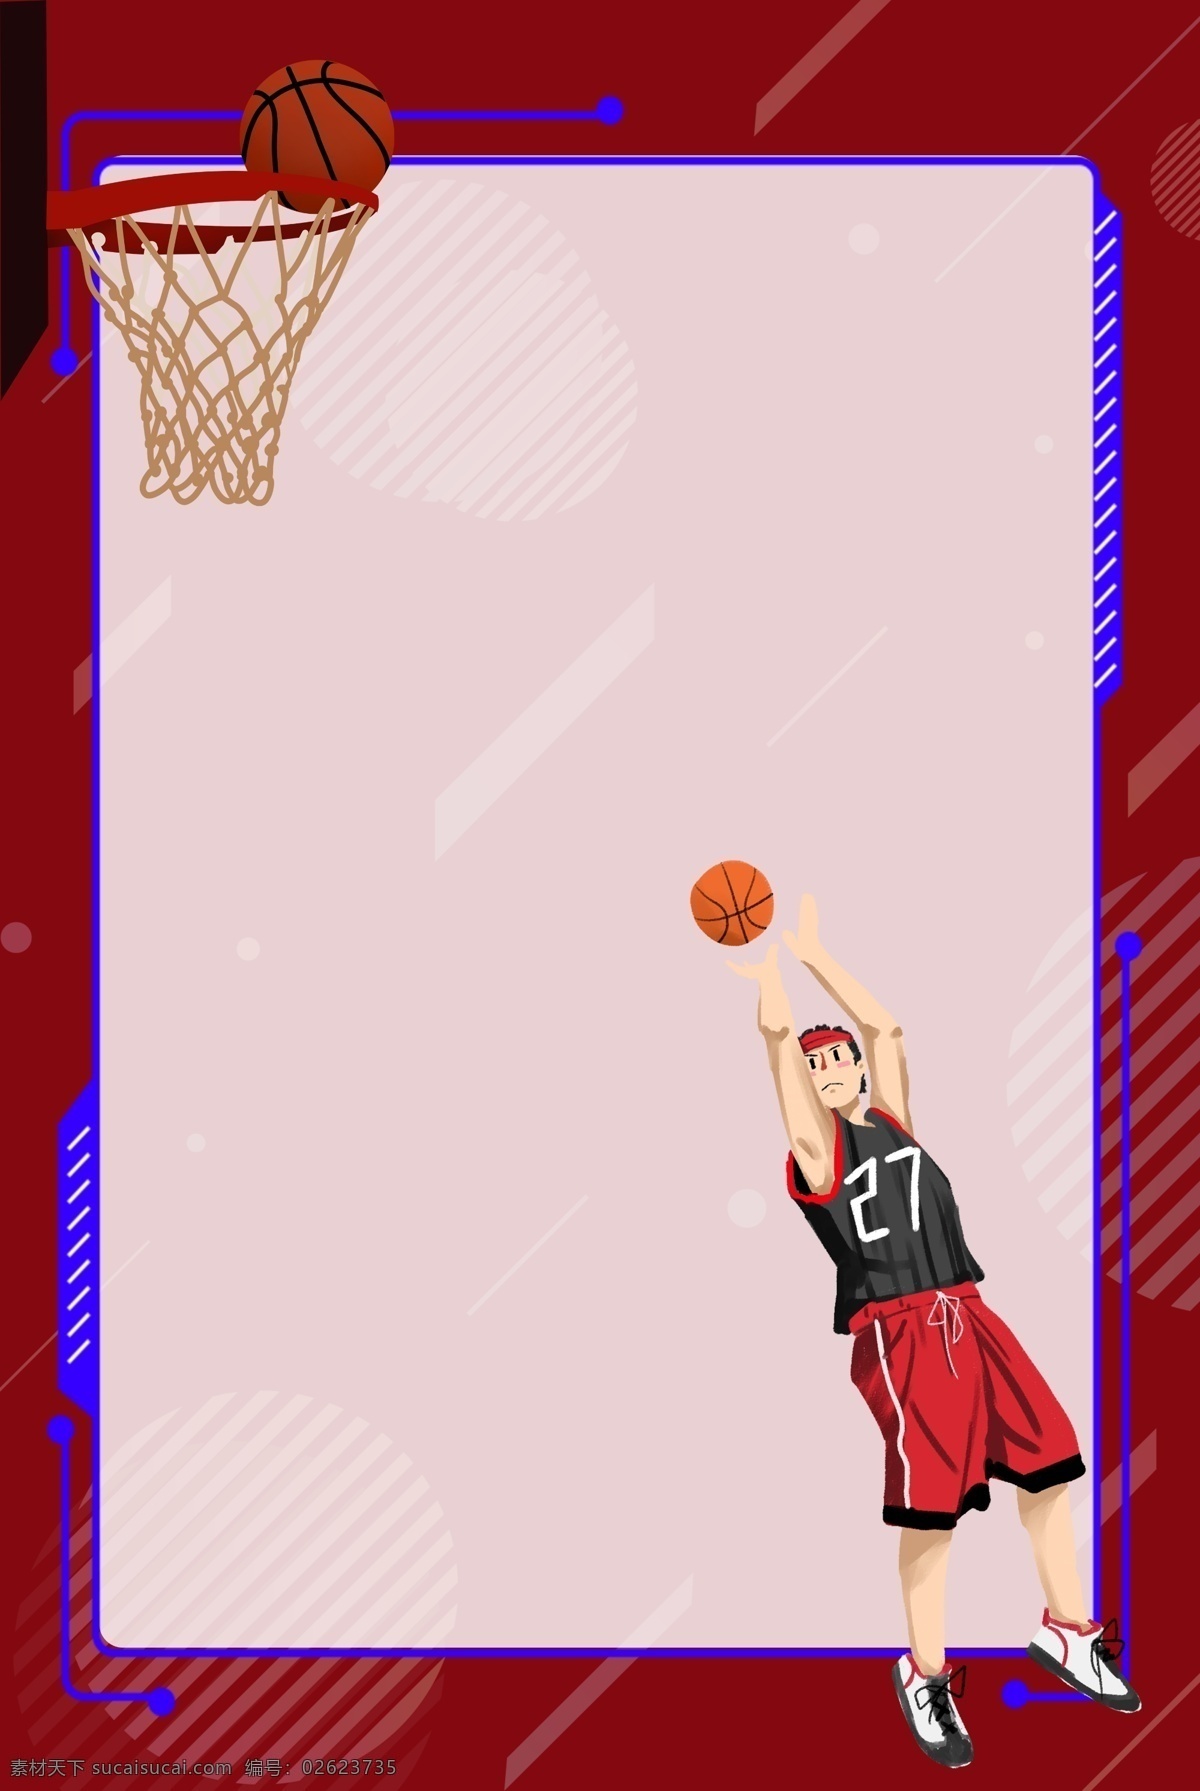 篮球 健身 边框 背景 打篮球的男孩 篮球框 装饰 健身的男孩 红色篮球服 体育运动 卡通插画 运动